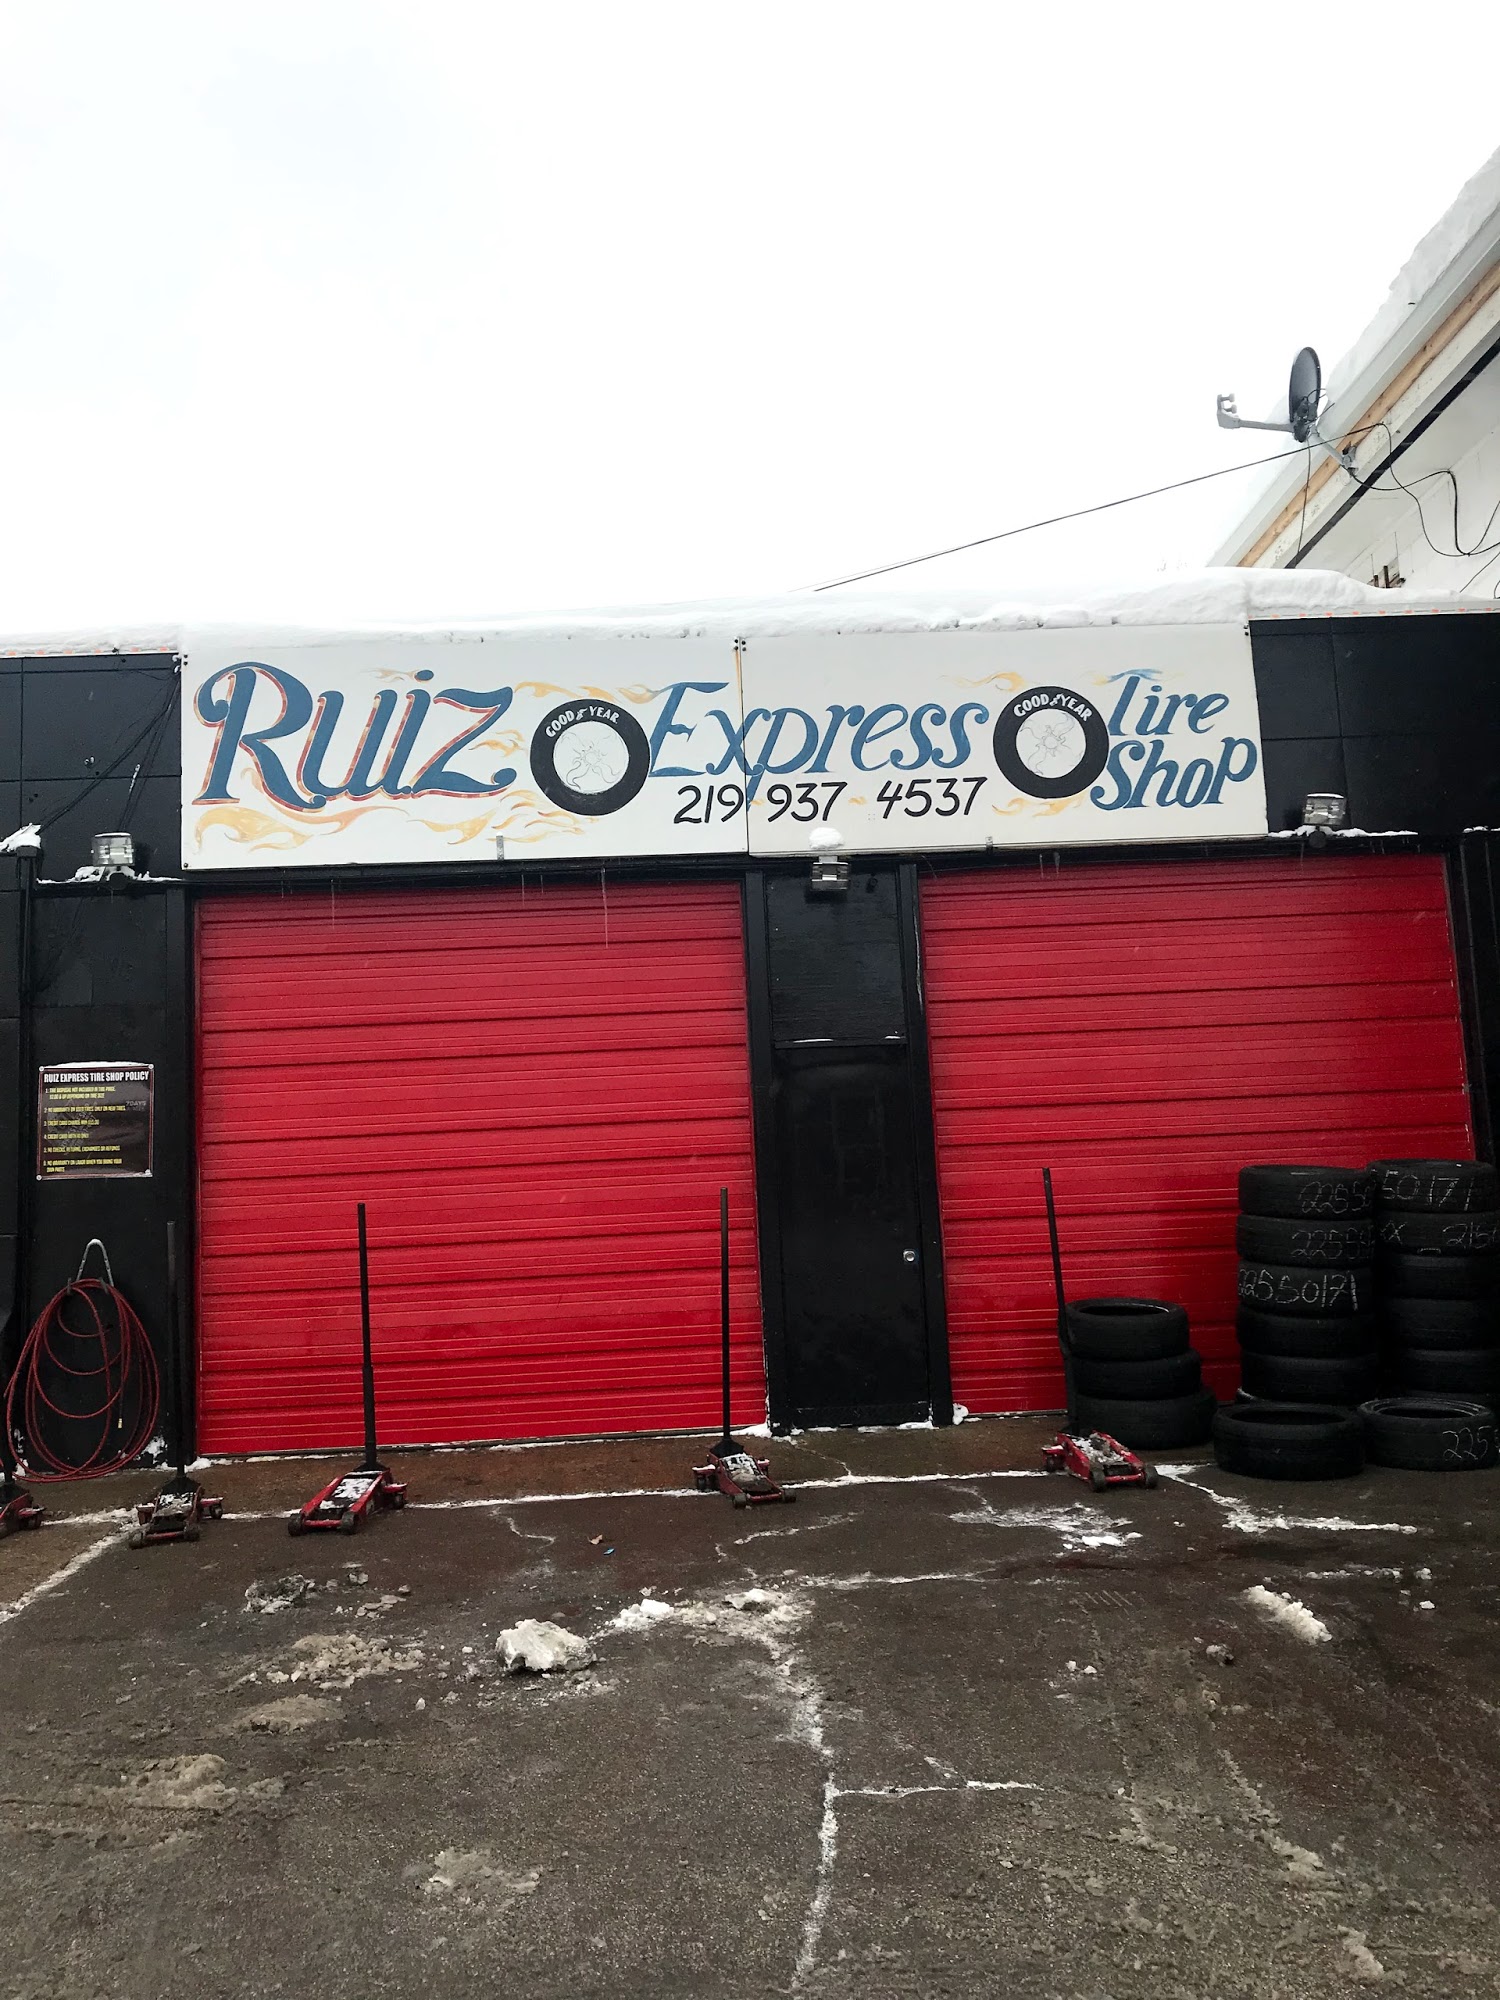 Ruiz Express Tire Shop